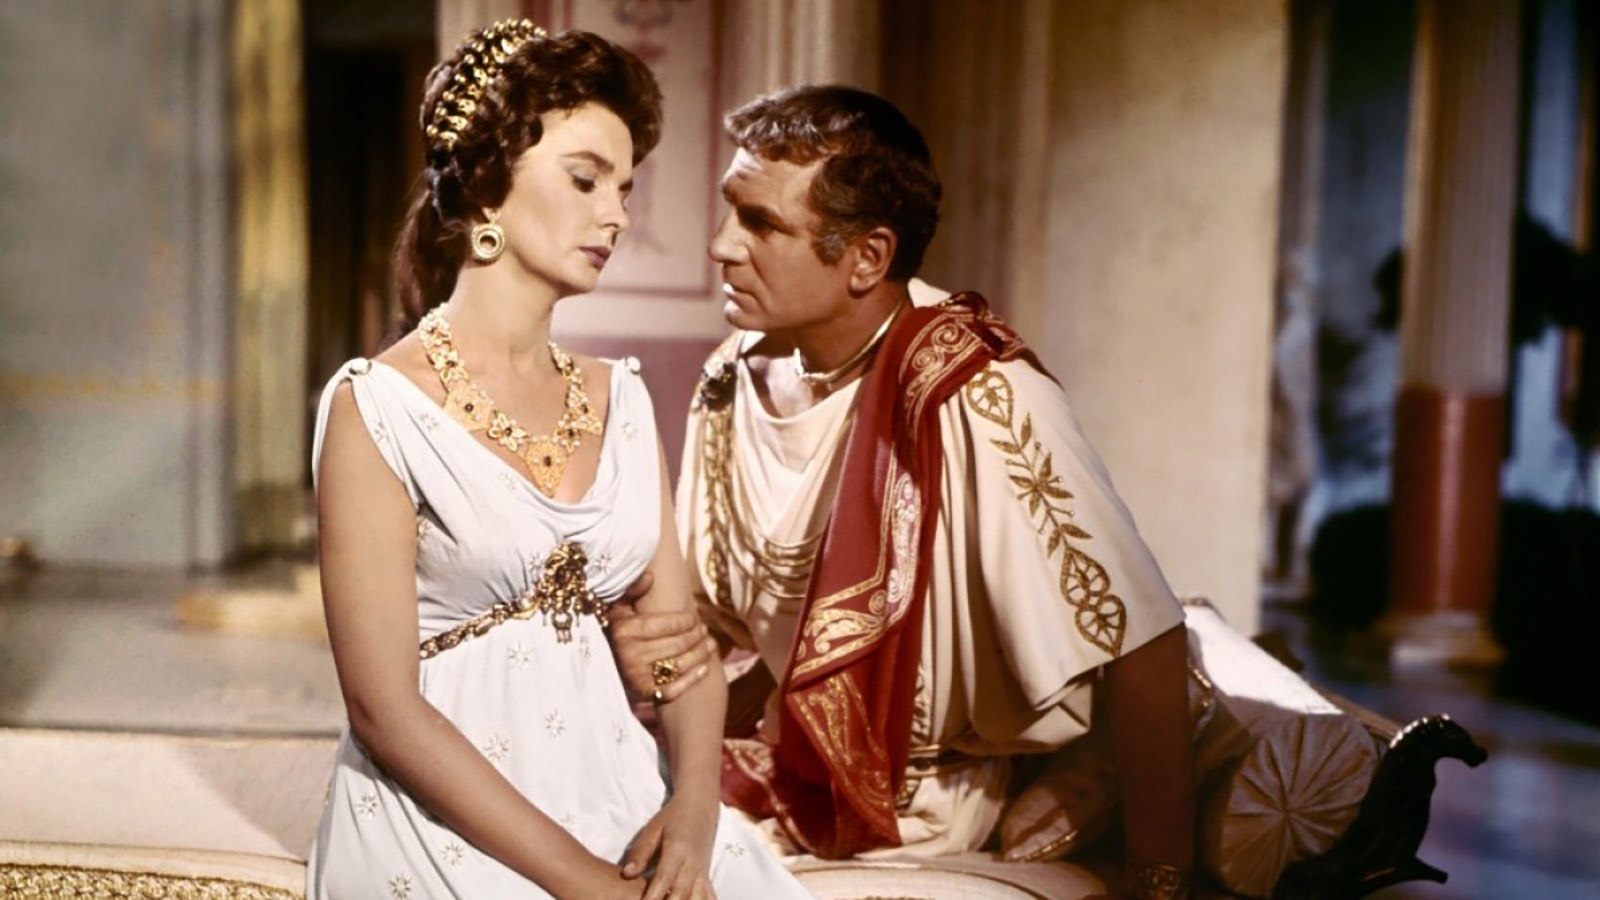 Какая интимная практика была табу в Древнем Риме?